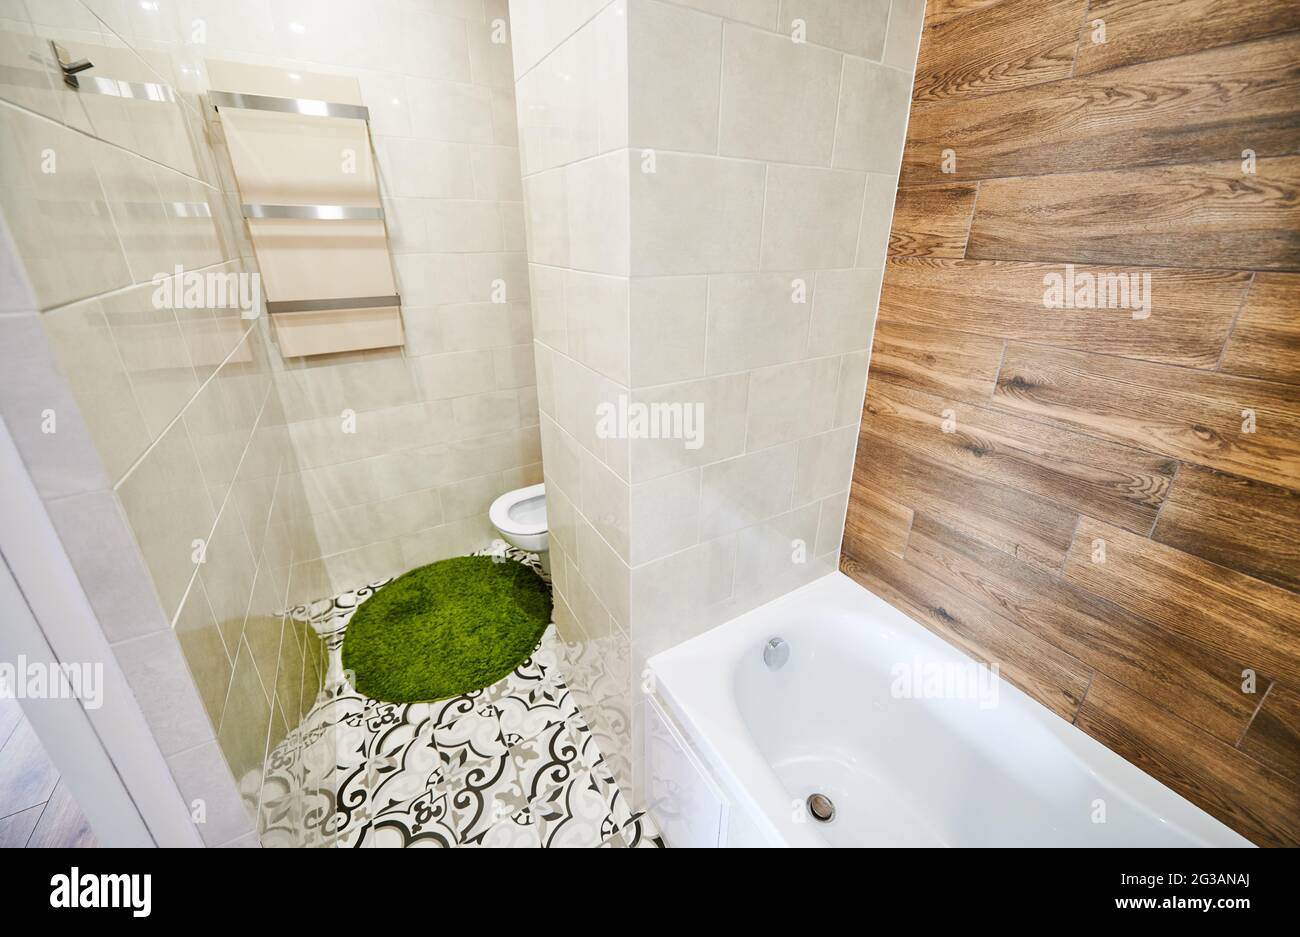 Vue sur la partie gauche de la petite salle de bains lumineuse avec rénovation moderne. Carreaux blancs sur les murs se combinant avec des éléments en bois, plomberie en céramique et tapis de bain vert. Banque D'Images